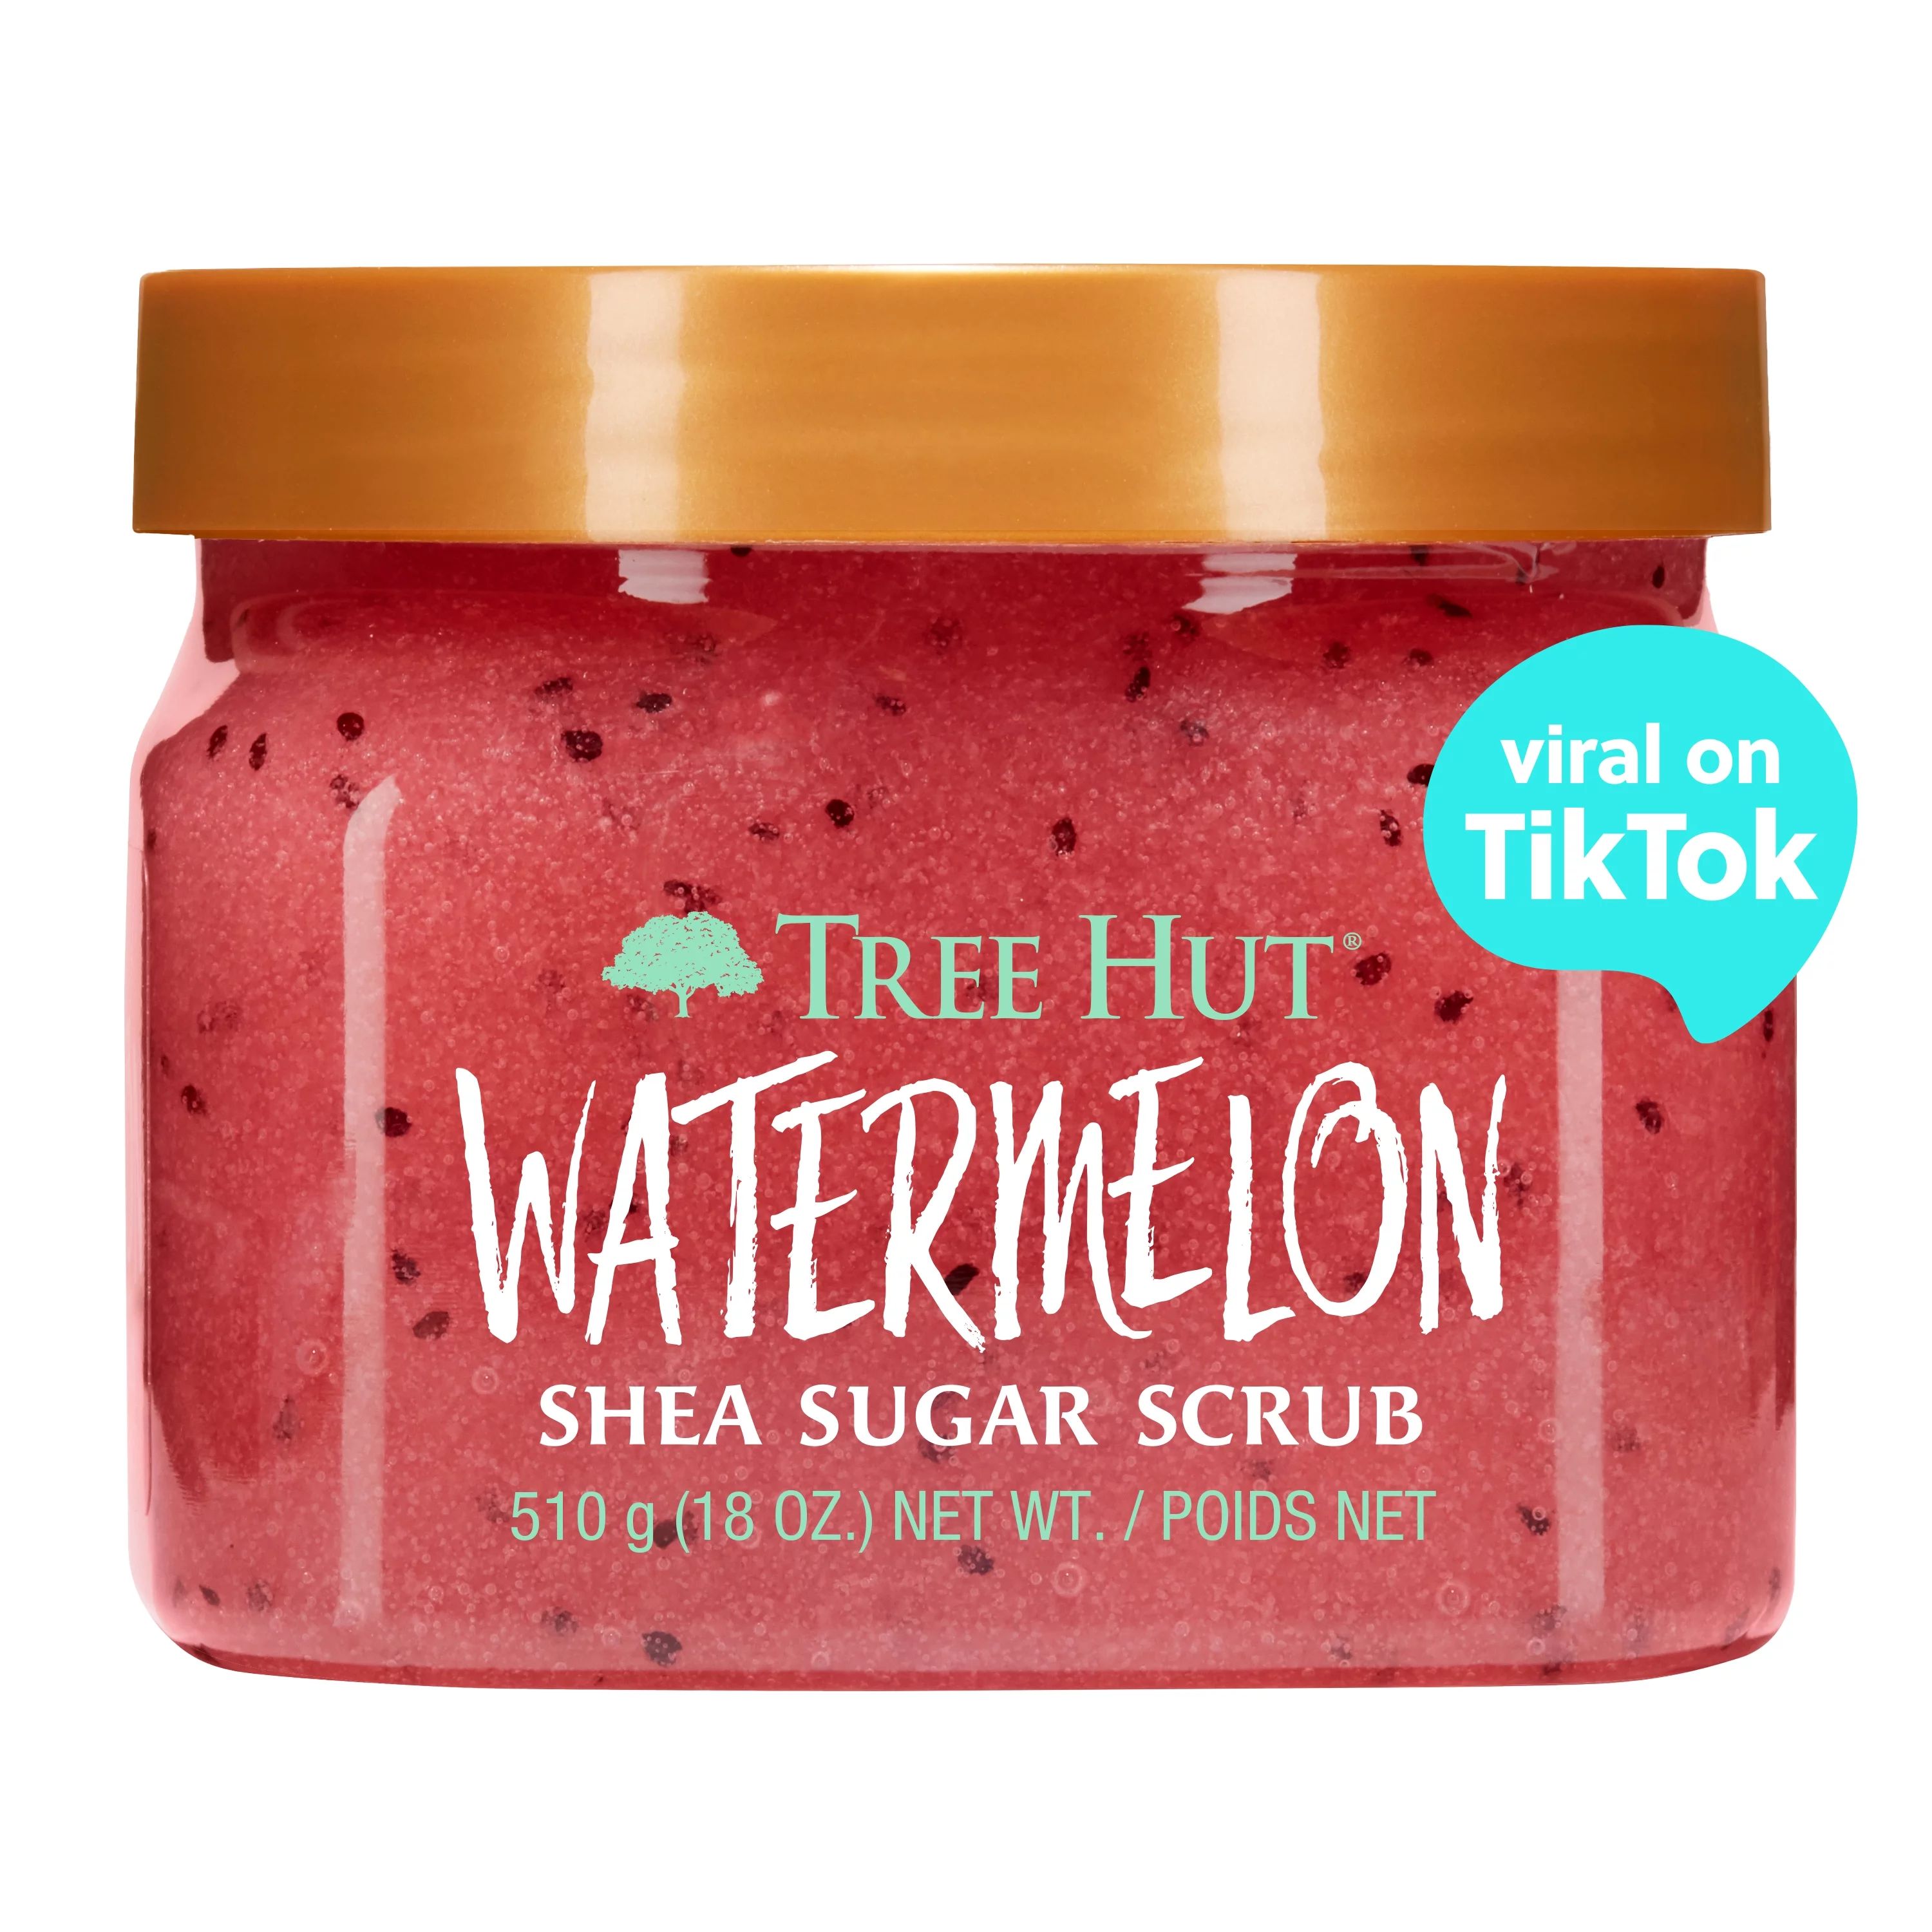 Tree Hut Watermelon Shea Sugar Exfoliating and Hydrating Body Scrub, 18 oz. | Walmart (US)